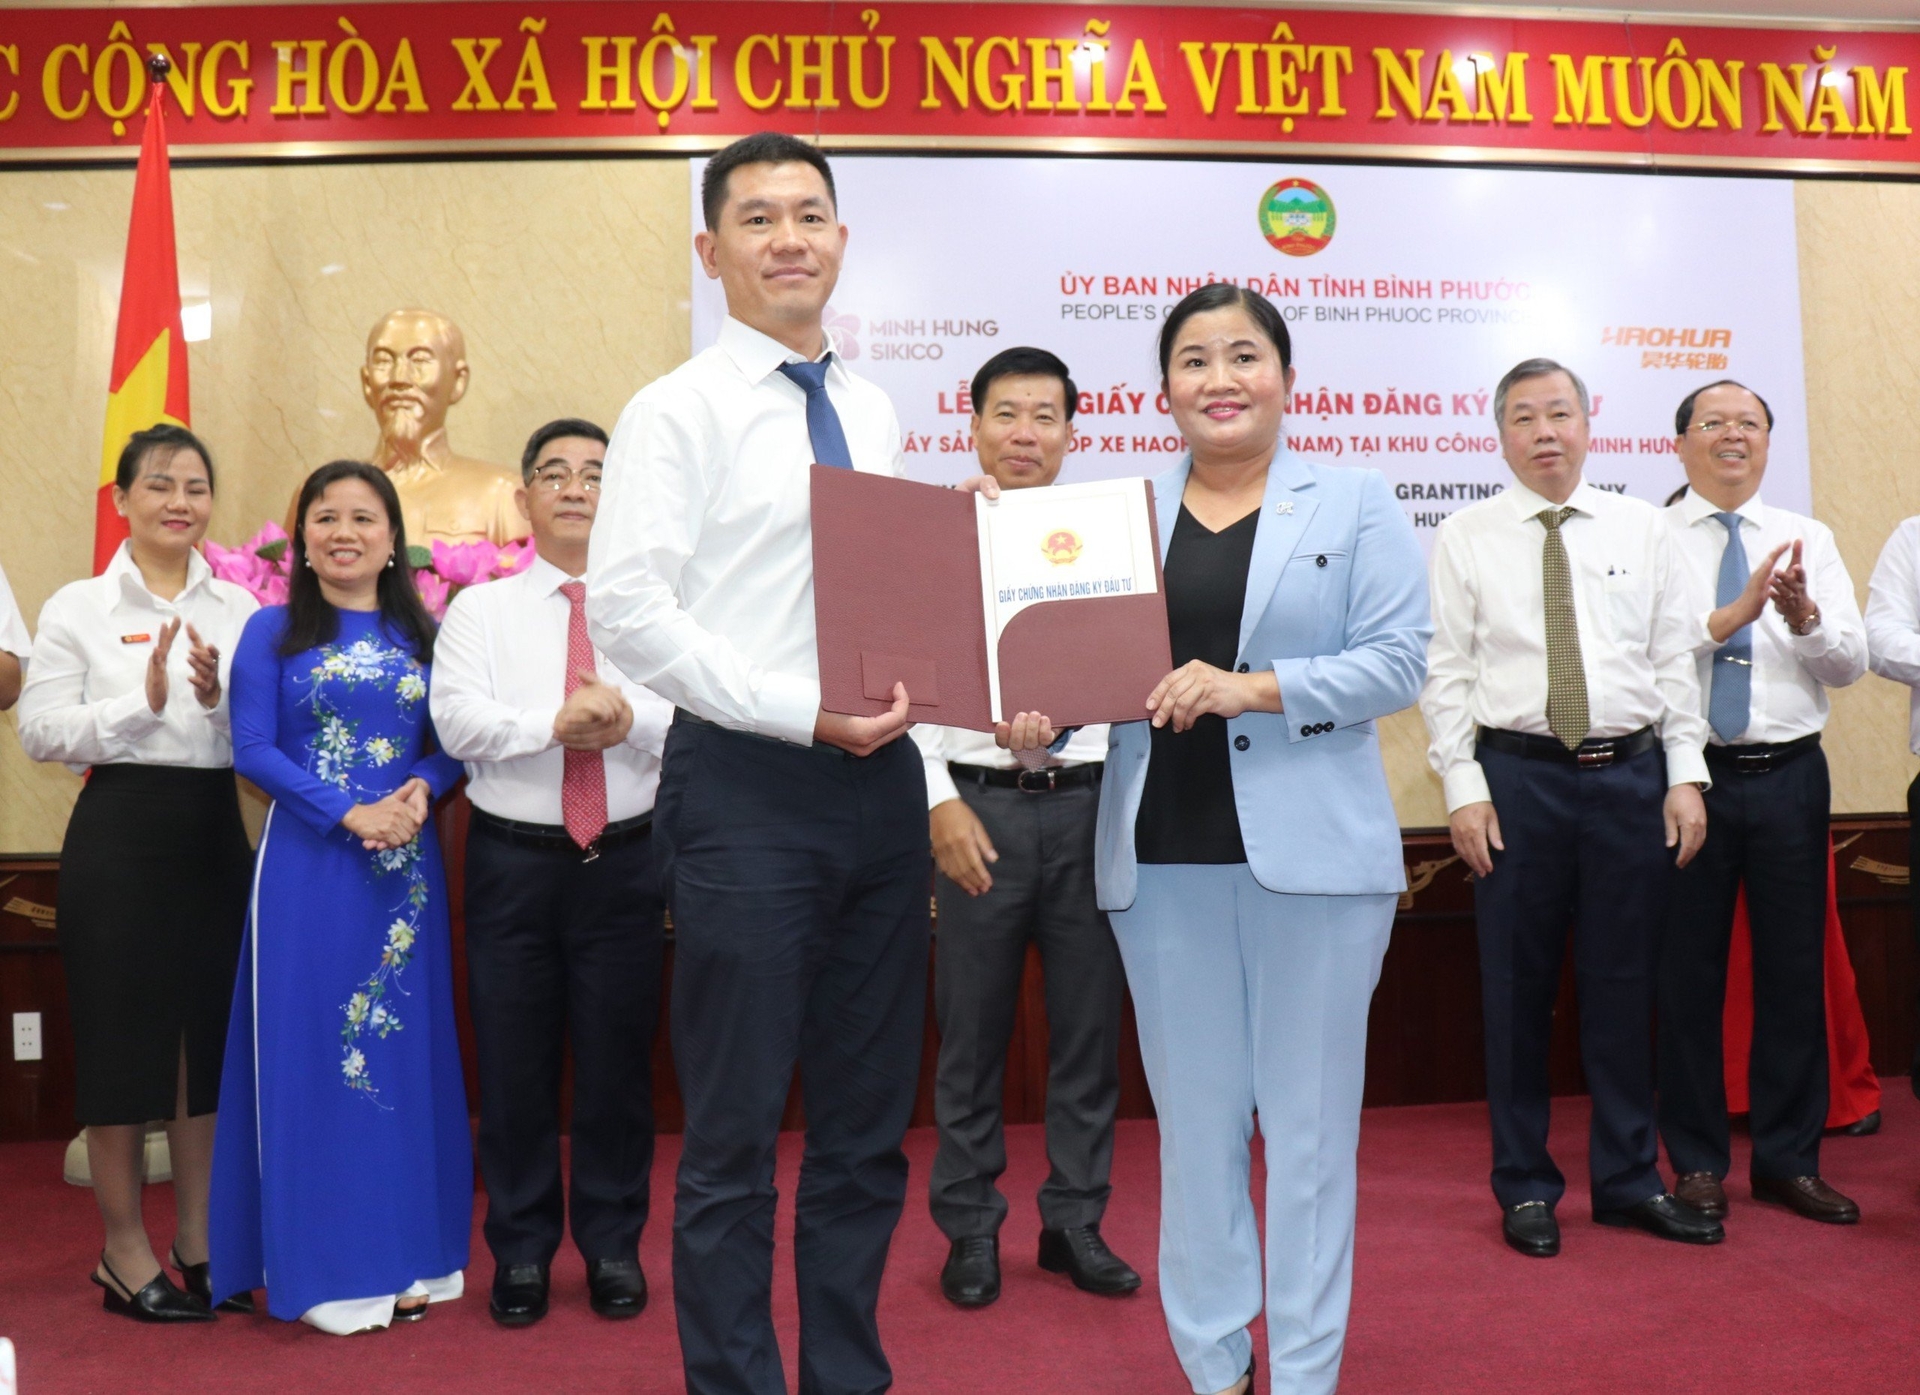 Chủ tịch UBND tỉnh Bình Phước Trần Tuệ Hiền trao giấy chứng nhận đầu tư cho chủ đầu tư Dự án Nhà máy sản xuất lốp xe Haohua Việt Nam. Ảnh: Bình Phước.